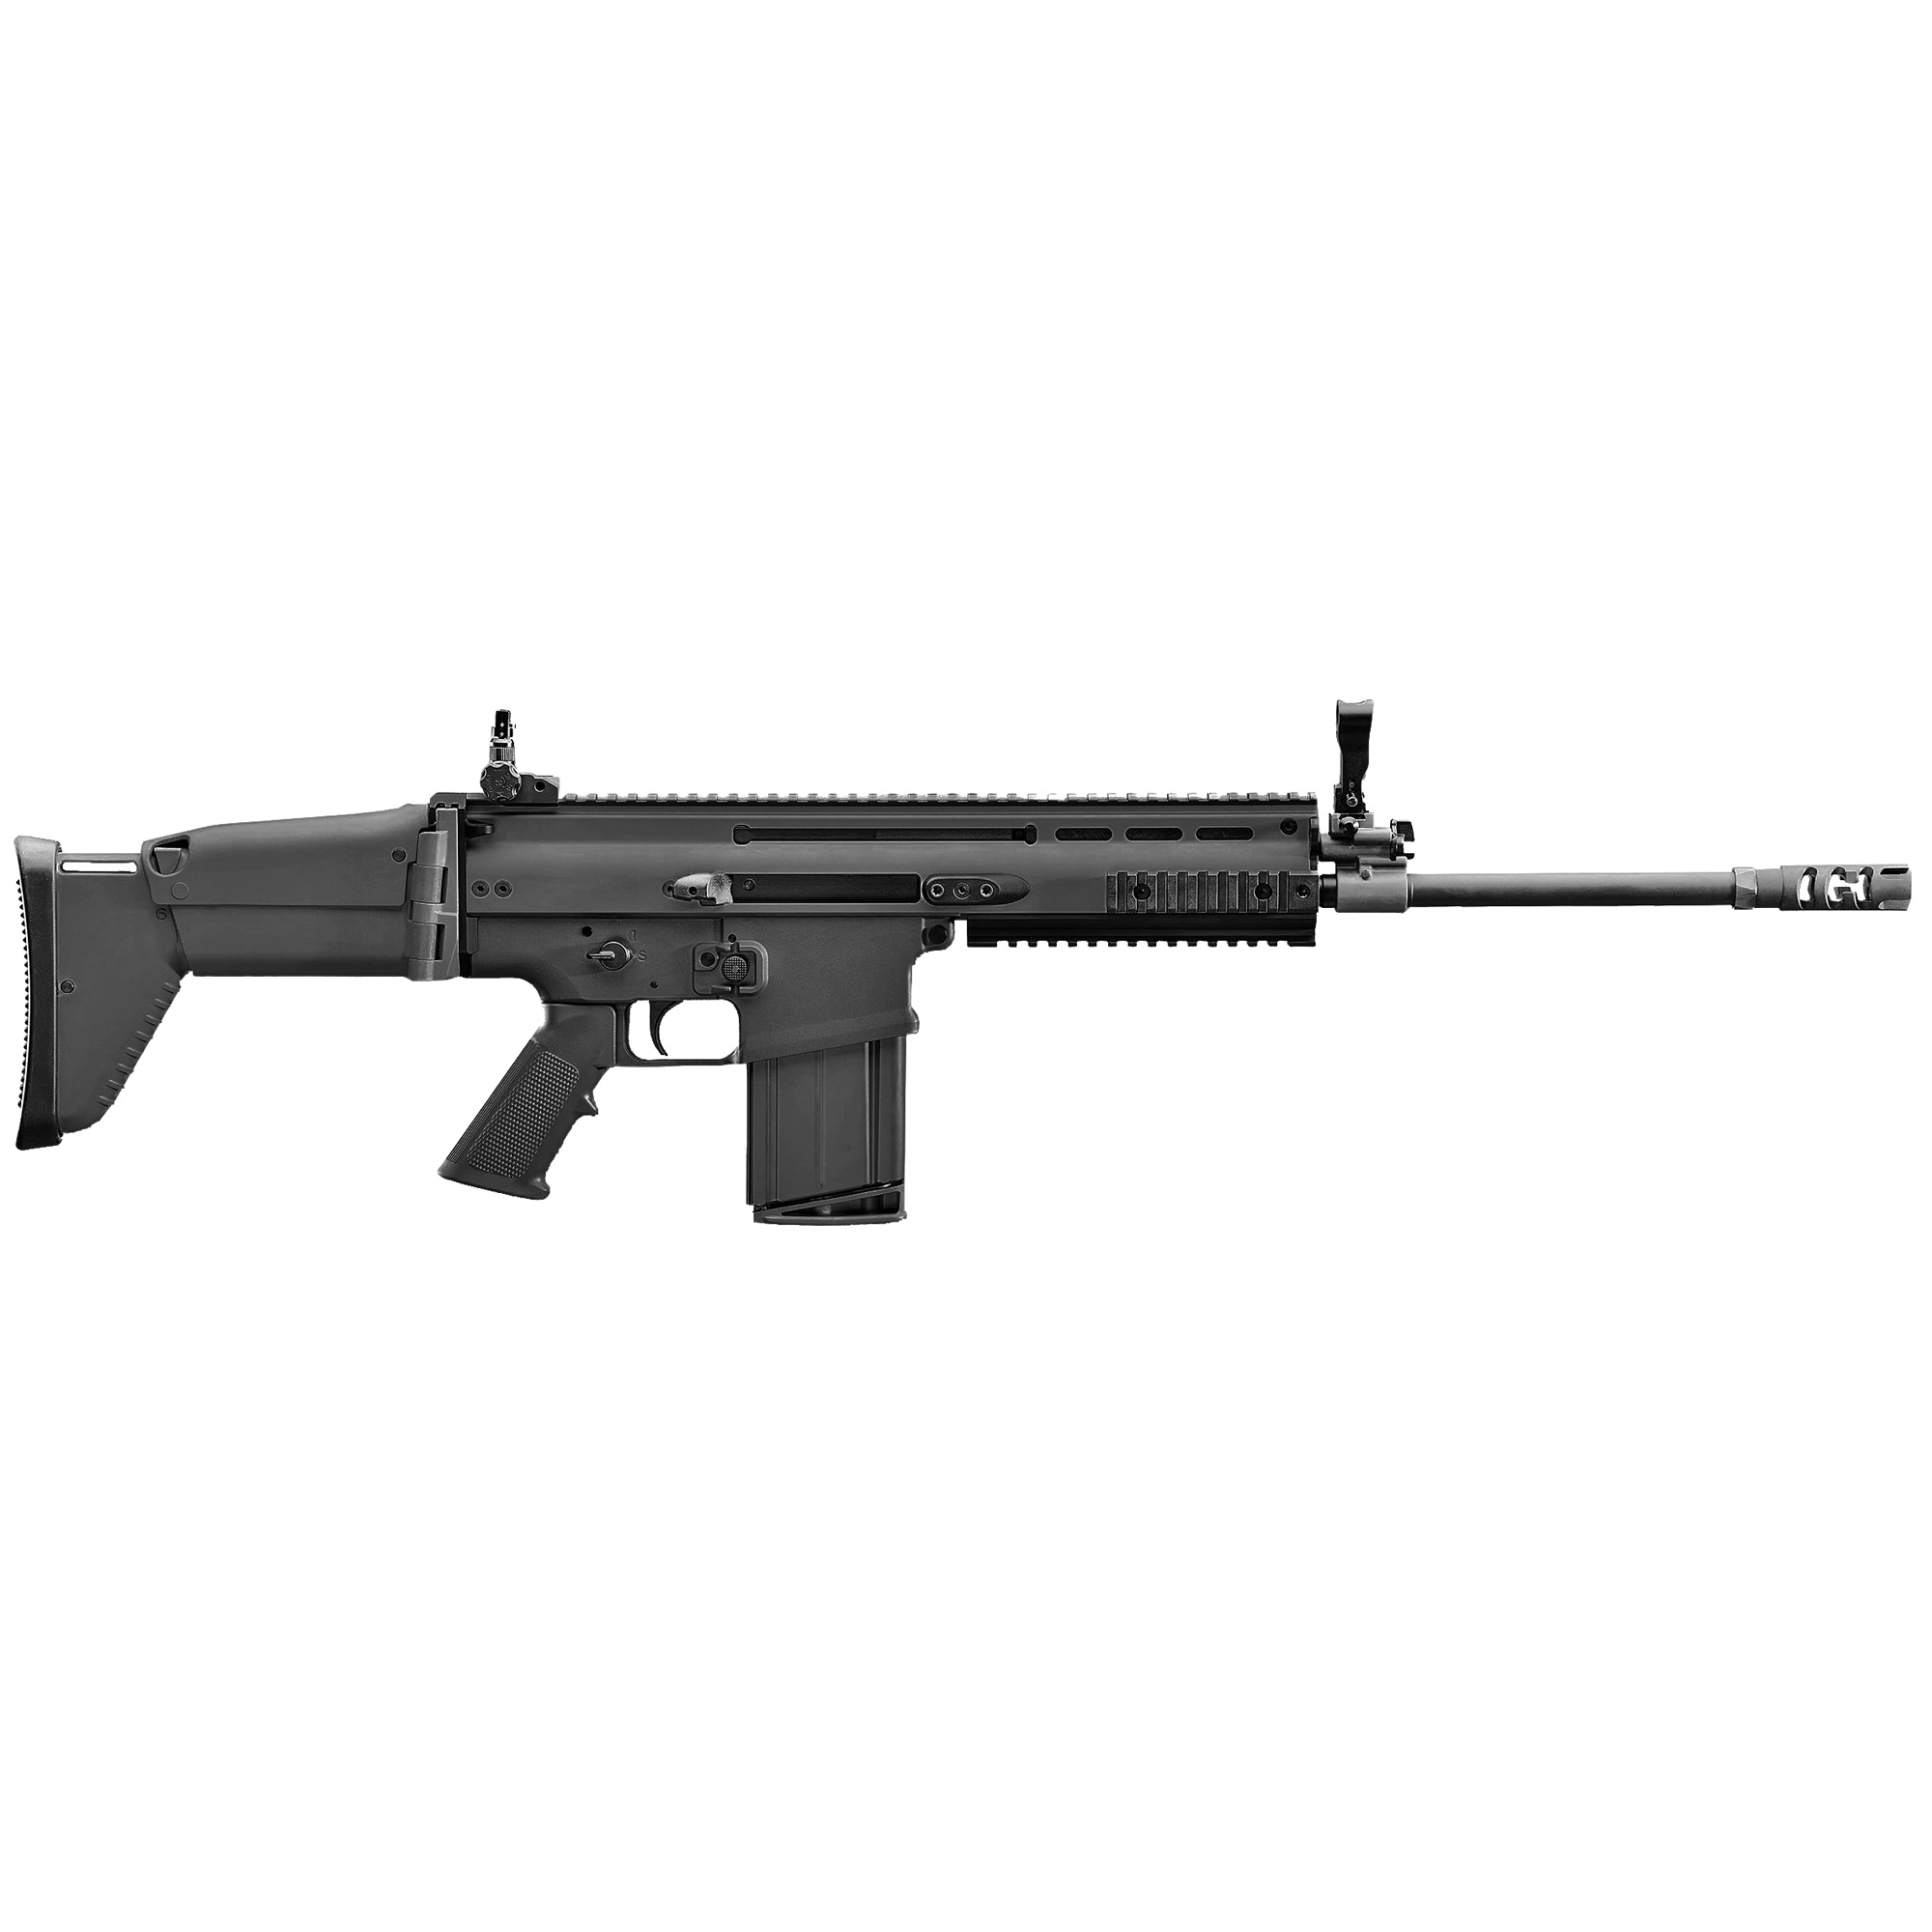 FN America, SCAR 17S NRCH, Semi-automatic Rifle, 308 Win/762NATO, 16